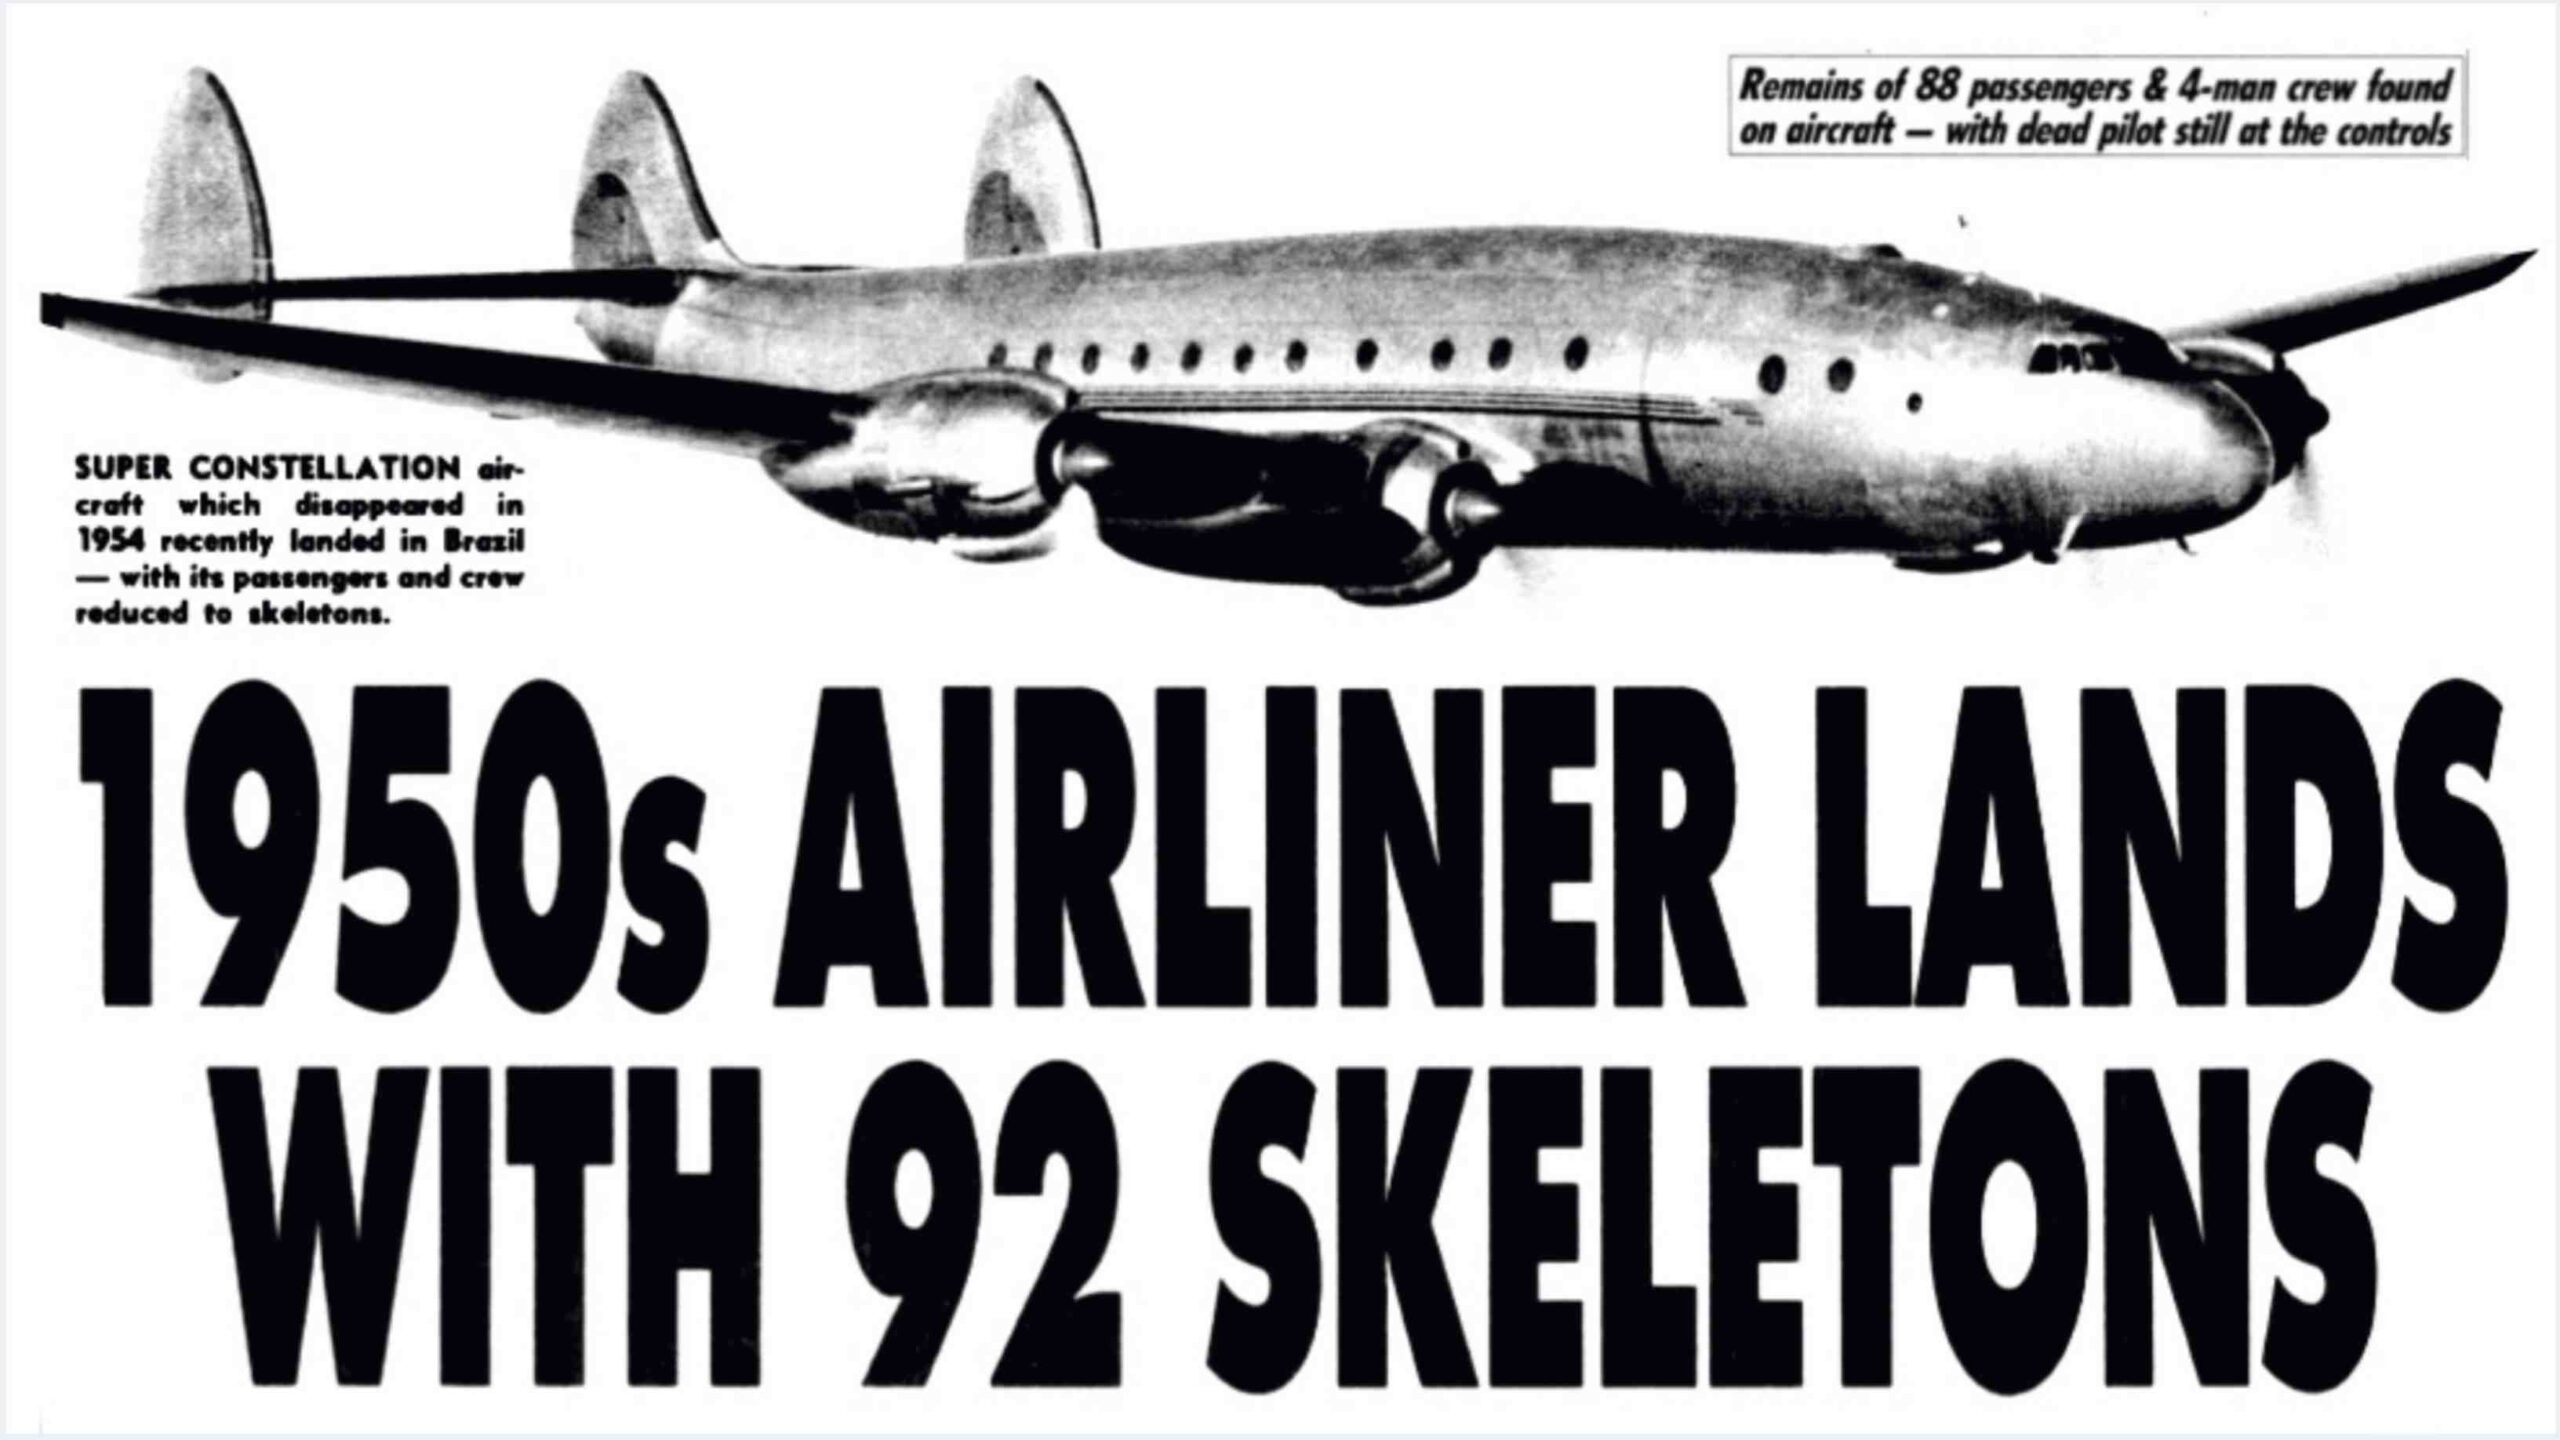 Santiago uçuş 513: 35 yıldır kayıp olan uçak, içinde 92 iskeletle indi! 1